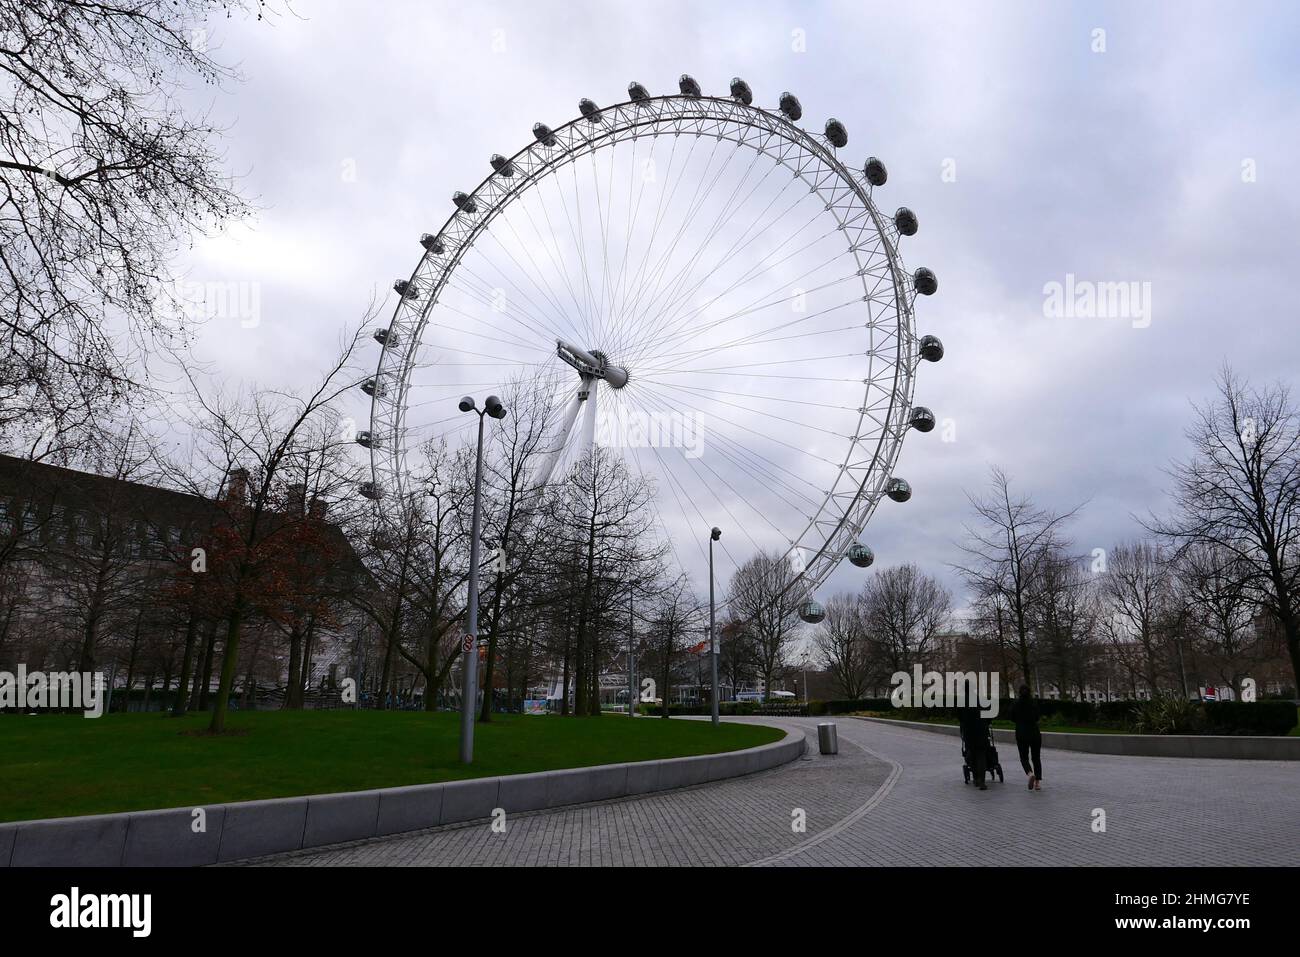 Il London Eye, o Millennium Wheel, è una ruota panoramica a sbalzo sulla South Bank del Tamigi a Londra. È la ruota di osservazione a sbalzo più alta d'Europa, ed è l'attrazione turistica più popolare nel Regno Unito con oltre 3 milioni di visitatori all'anno ... Foto Stock